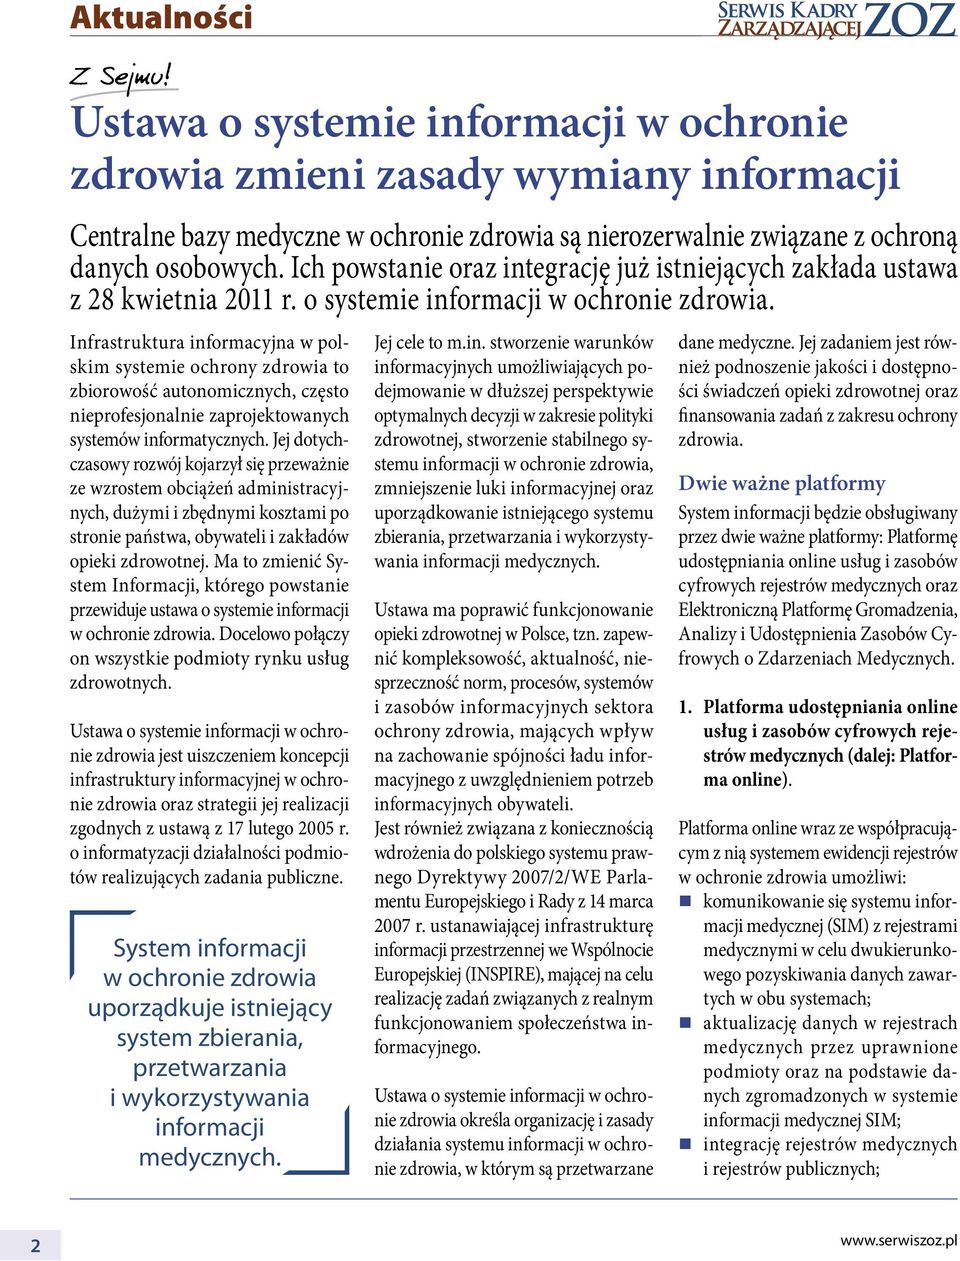 Infrastruktura informacyjna w polskim systemie ochrony zdrowia to zbiorowość autonomicznych, często nieprofesjonalnie zaprojektowanych systemów informatycznych.